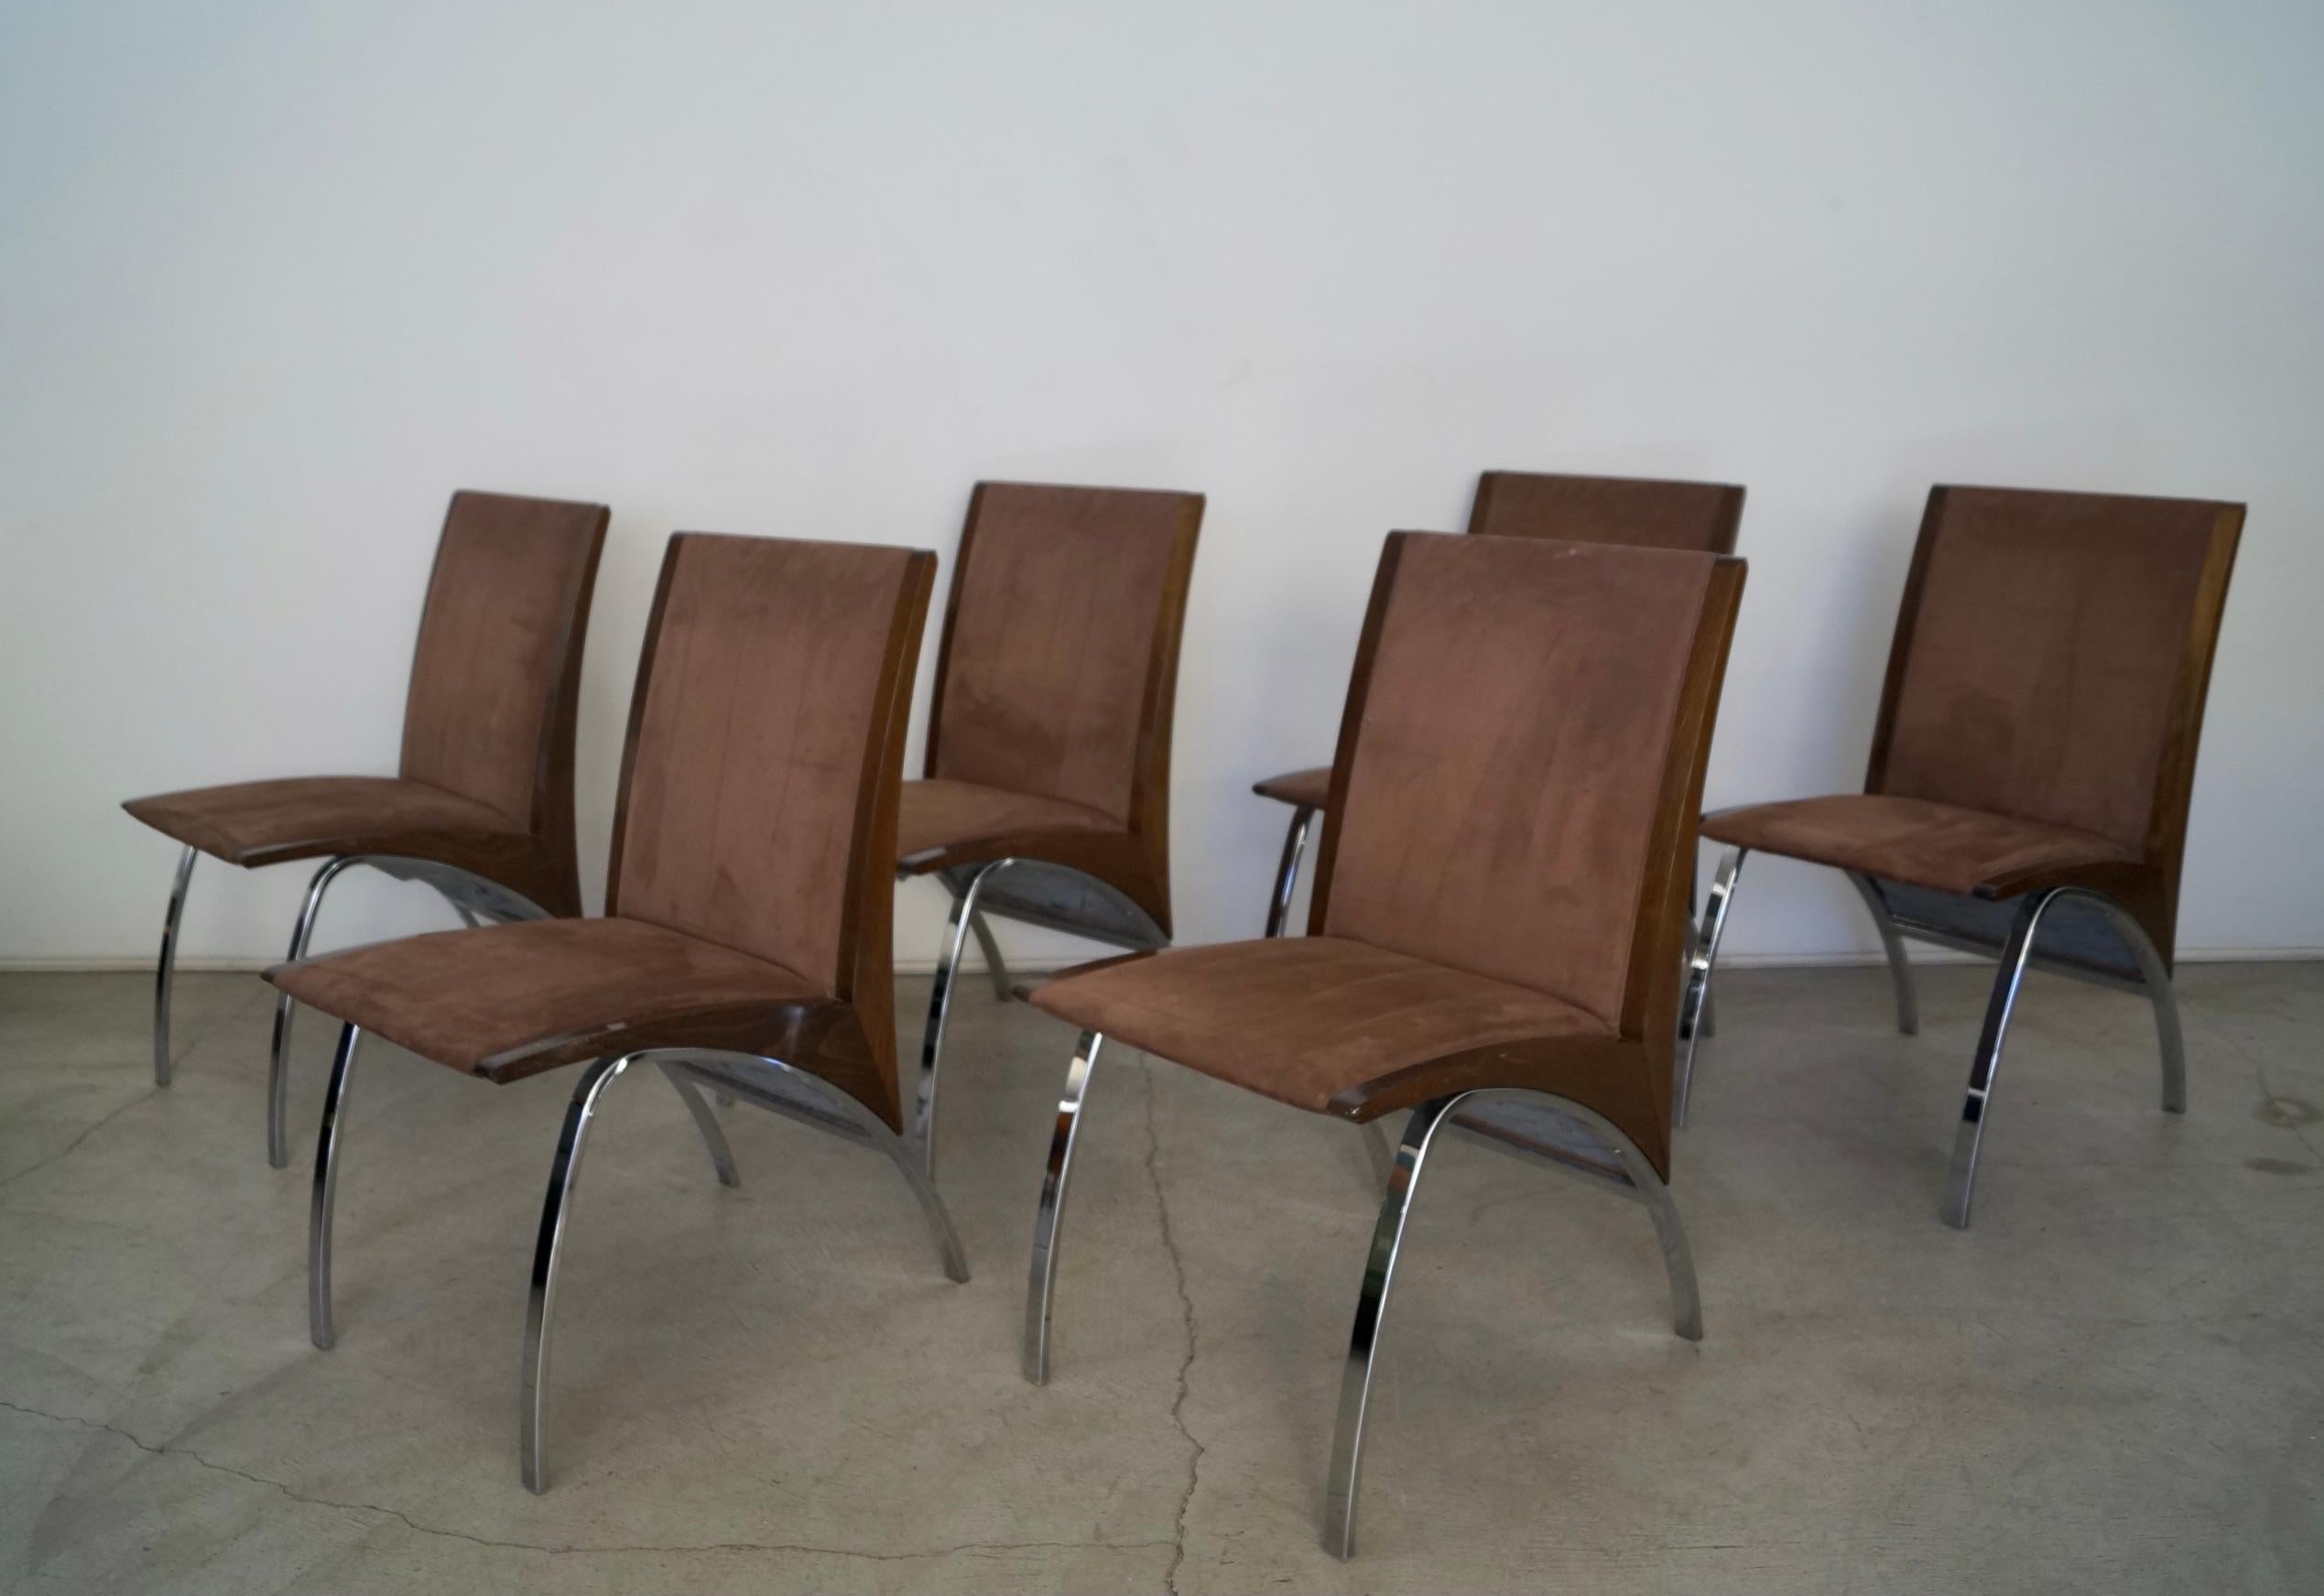 Des chaises de salle à manger post-modernes incroyables à vendre. Datant de la fin des années 1990/début des années 2000, il est vraiment unique. Ils ont été conçus par Pietro Costantini et fabriqués par Ello Furniture, aujourd'hui disparu. Ils sont